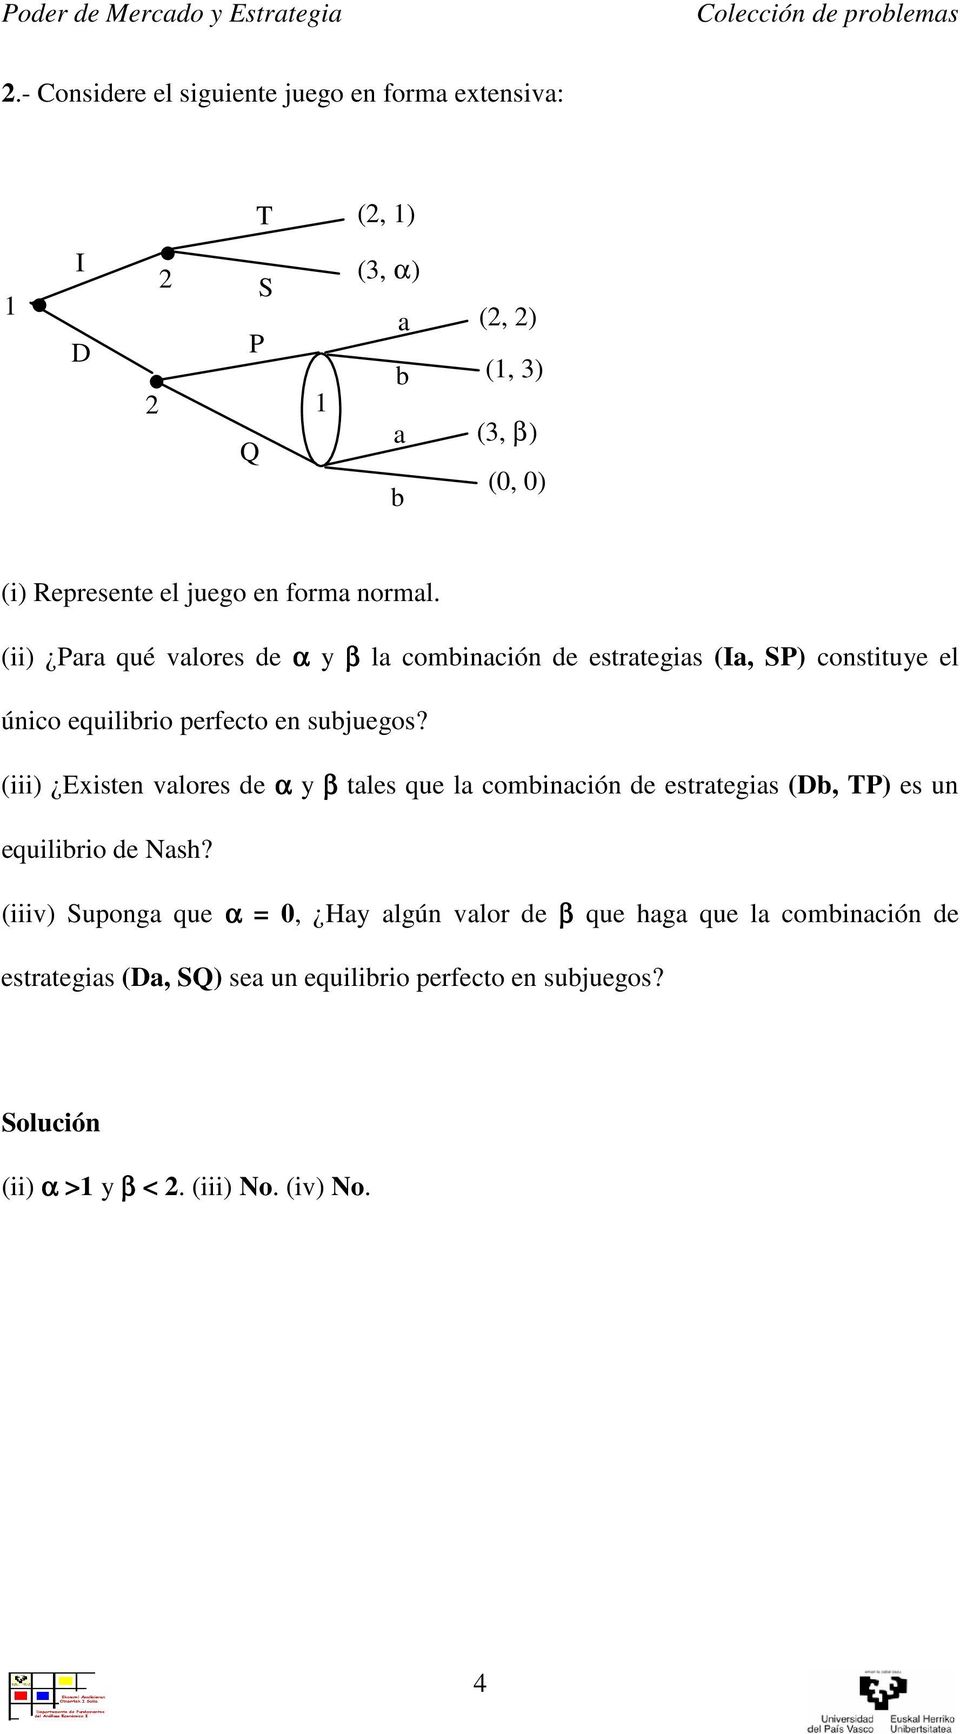 (iii) Existen valores de α y β tales que la combinación de estrategias (Db, TP) es un equilibrio de Nash?